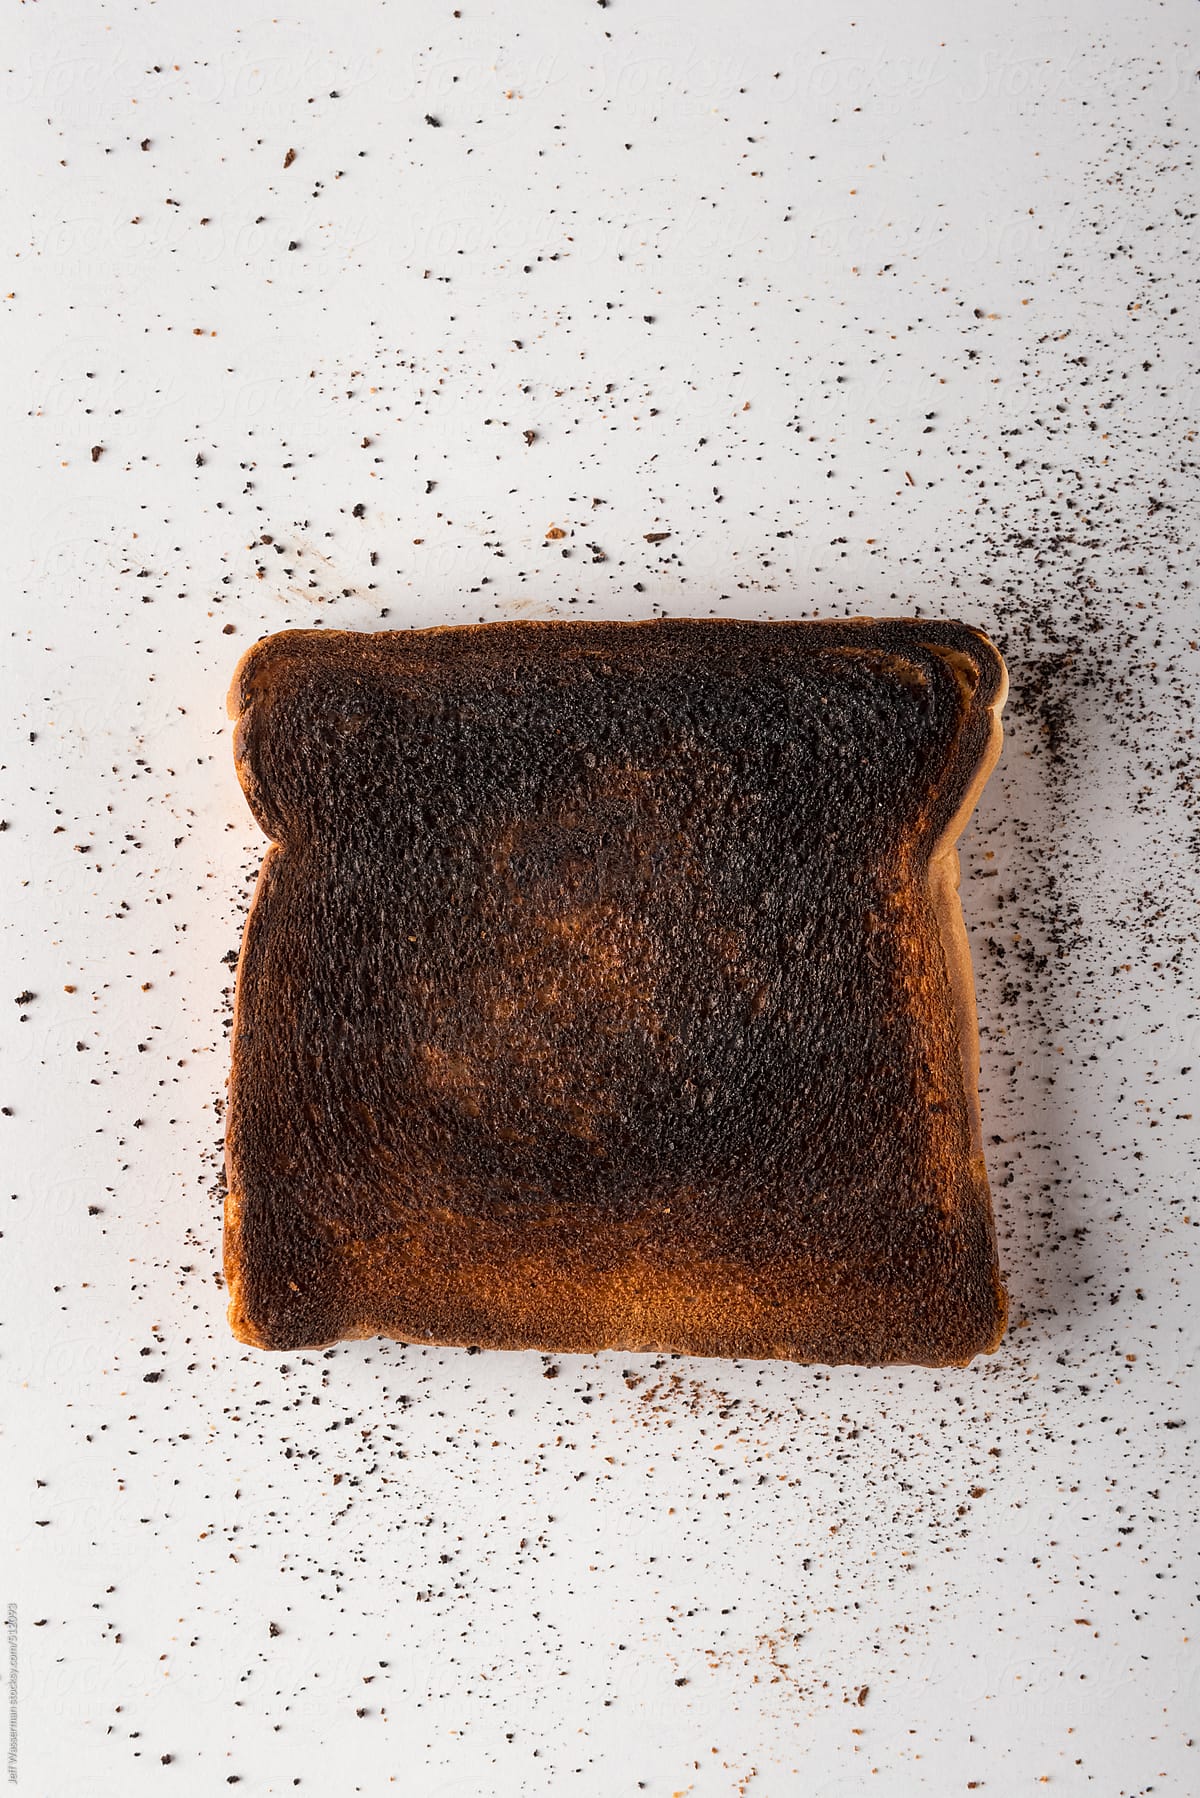 Burnt Toast on White